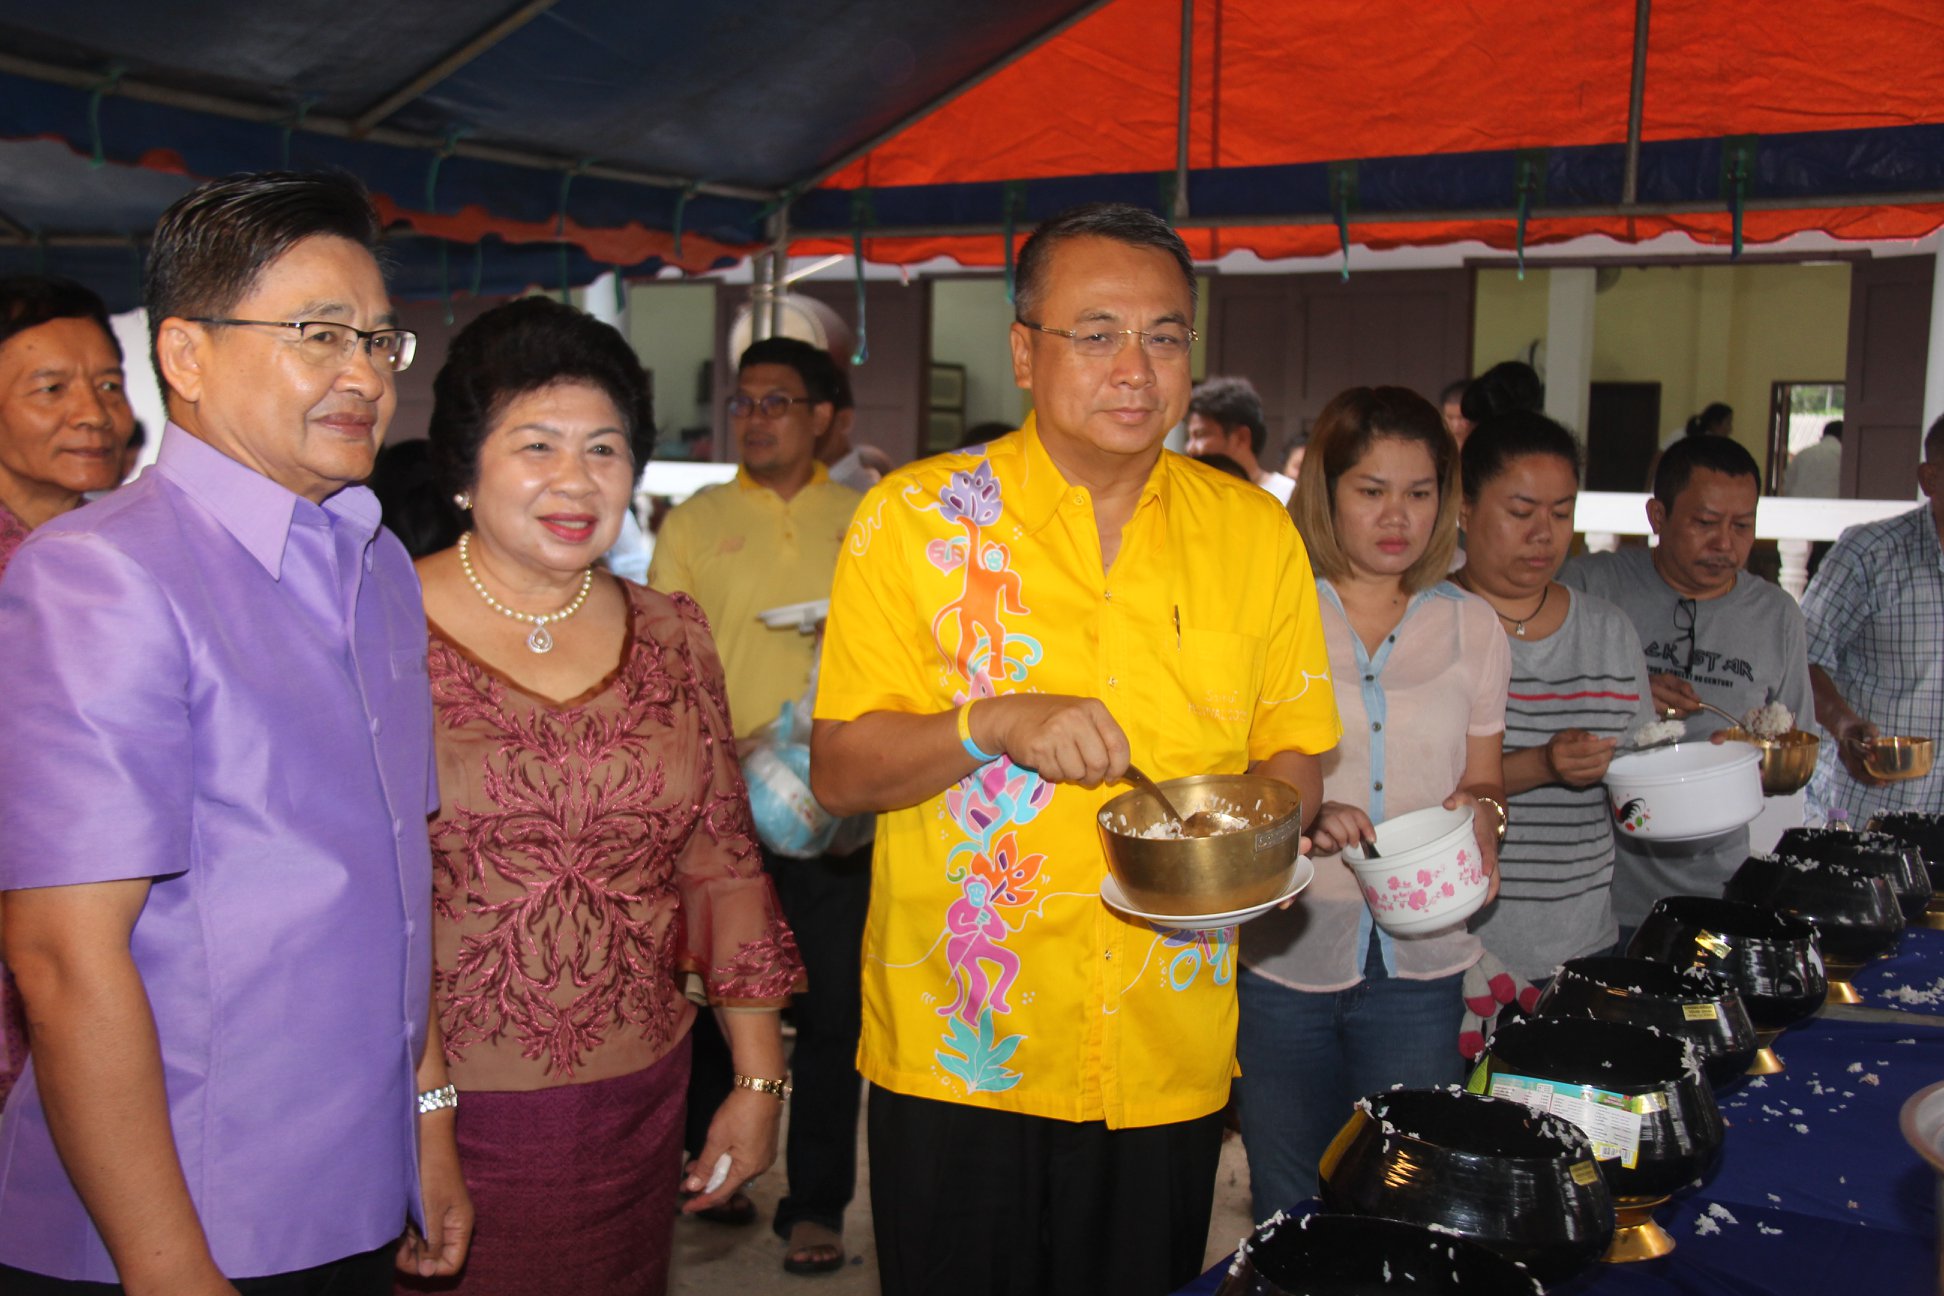 พ่อเมืองสุราษฯ นำข้าราชการ ประชาชน ร่วมงาน"บุญประเพณีเทศกาลสารทไทย ทำบุญรับตายาย"